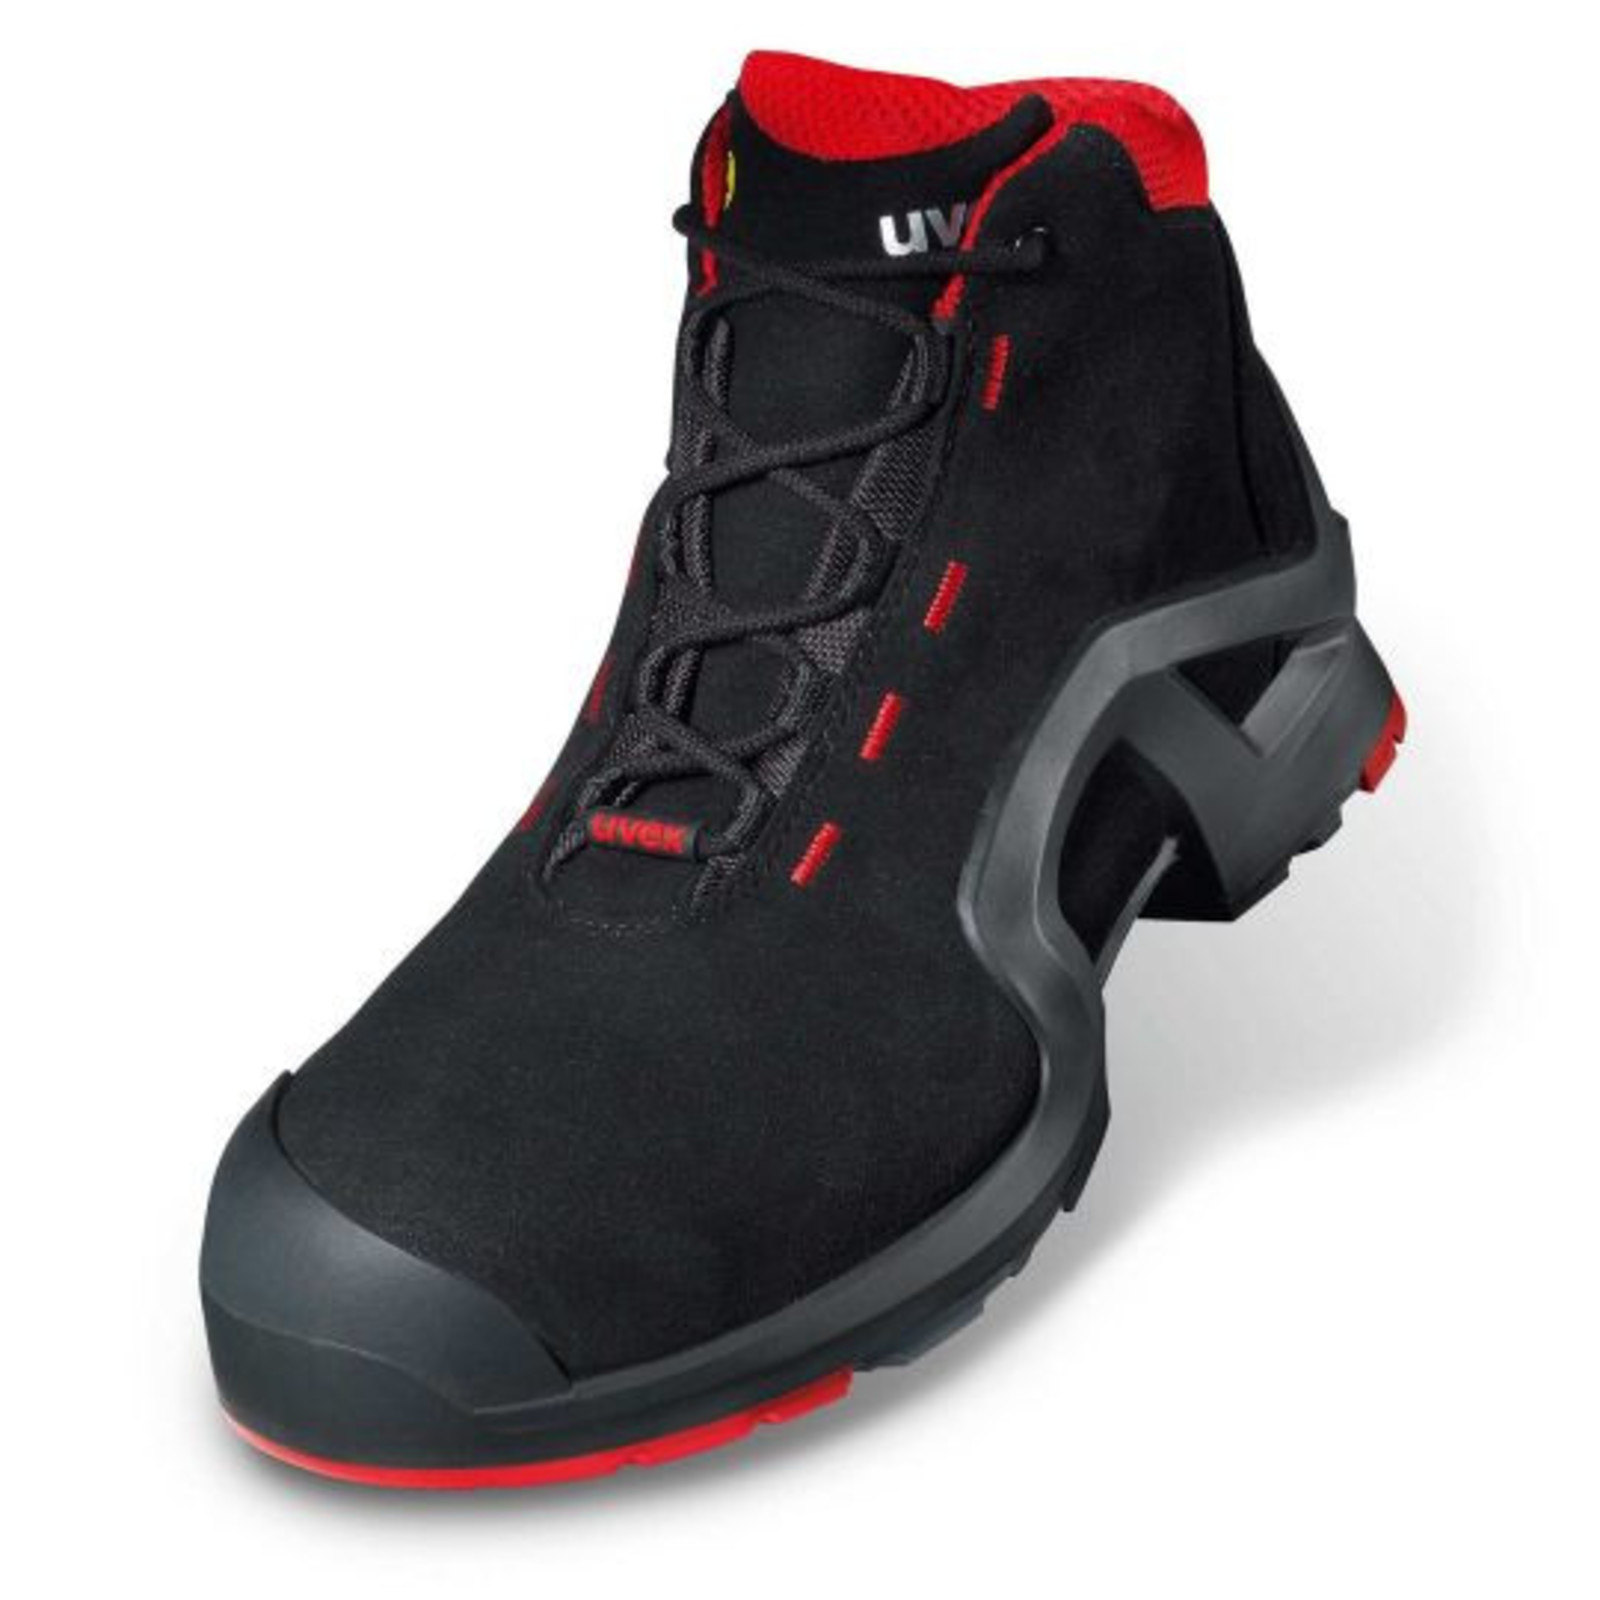 Vysoká bezpečnostná obuv Uvex 1 x-tended support S3 85172 - veľkosť: 35, farba: čierna/červená